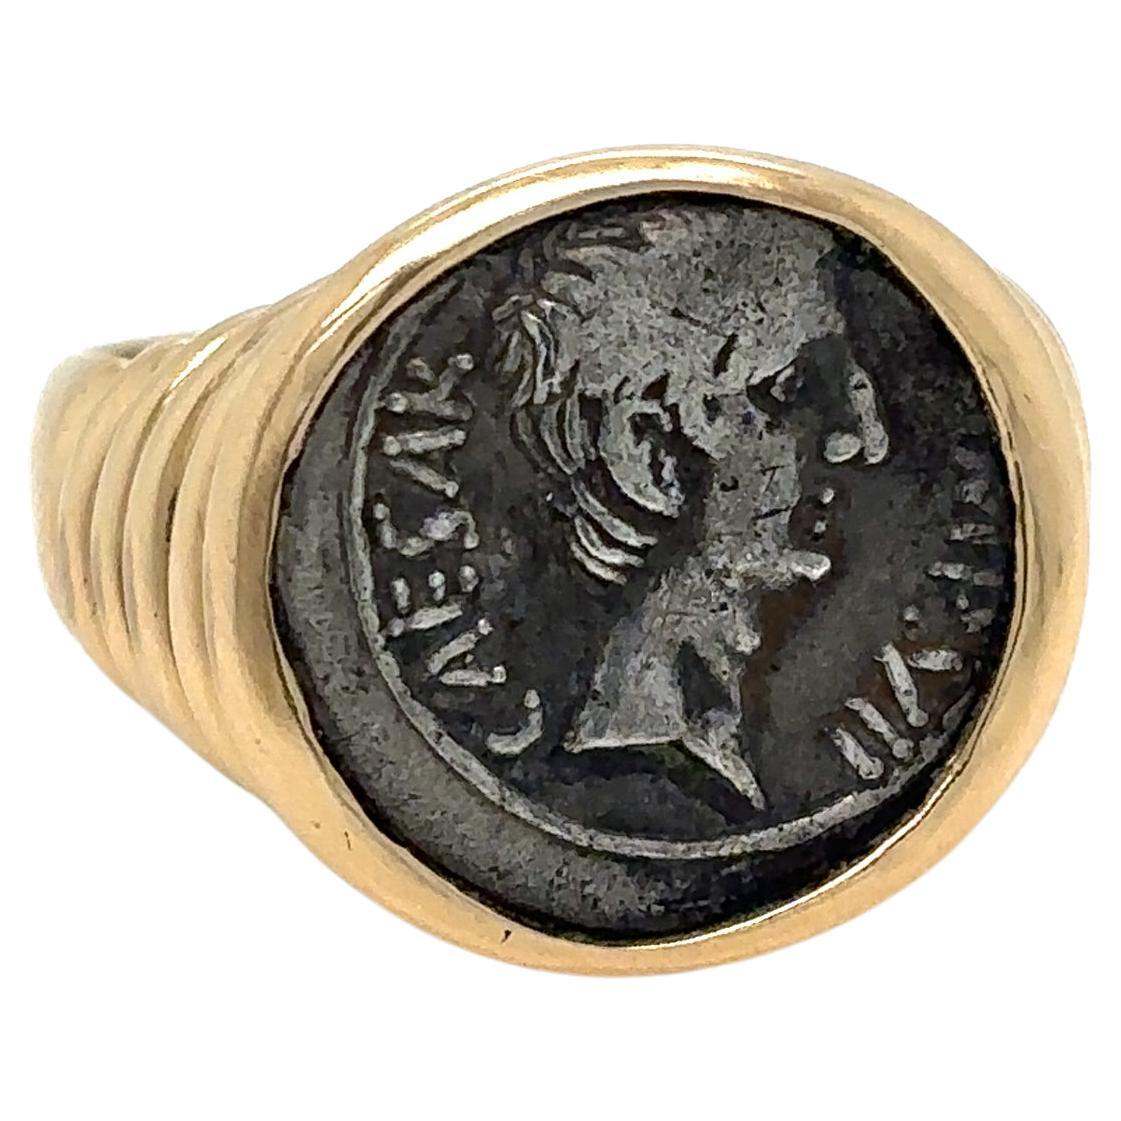 Bulgari, bague Monete Roman Imperatorial en argent et or